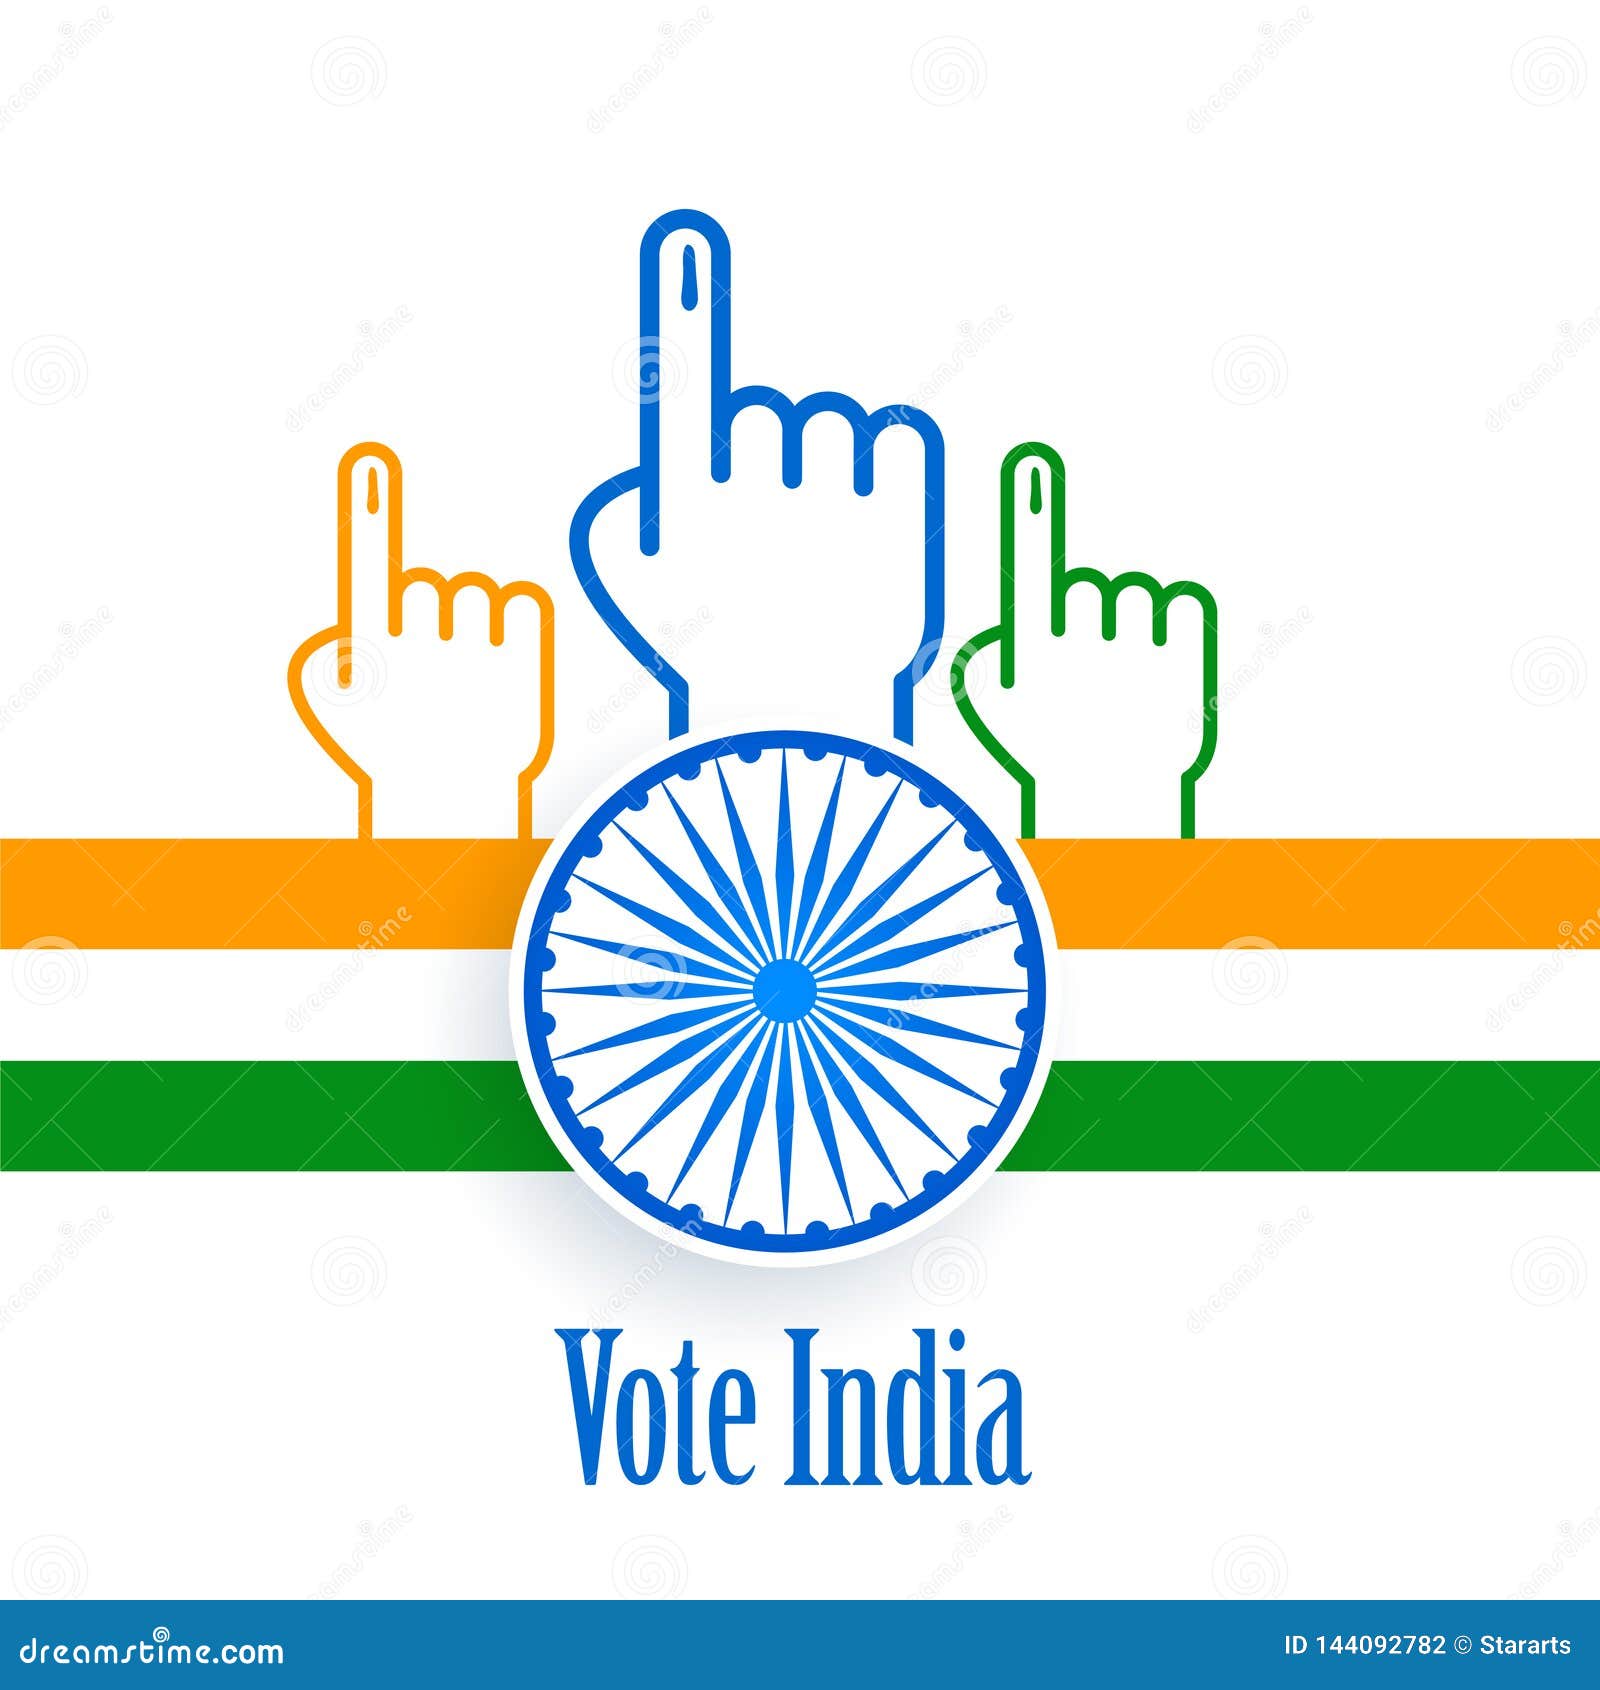 Thiết kế poster bầu cử Ấn Độ đầy sáng tạo và tươi mới, sẽ chinh phục ngay cả những người khó tính nhất. Hãy cùng xem hình ảnh này để khám phá thêm về thiết kế poster đặc sắc này.